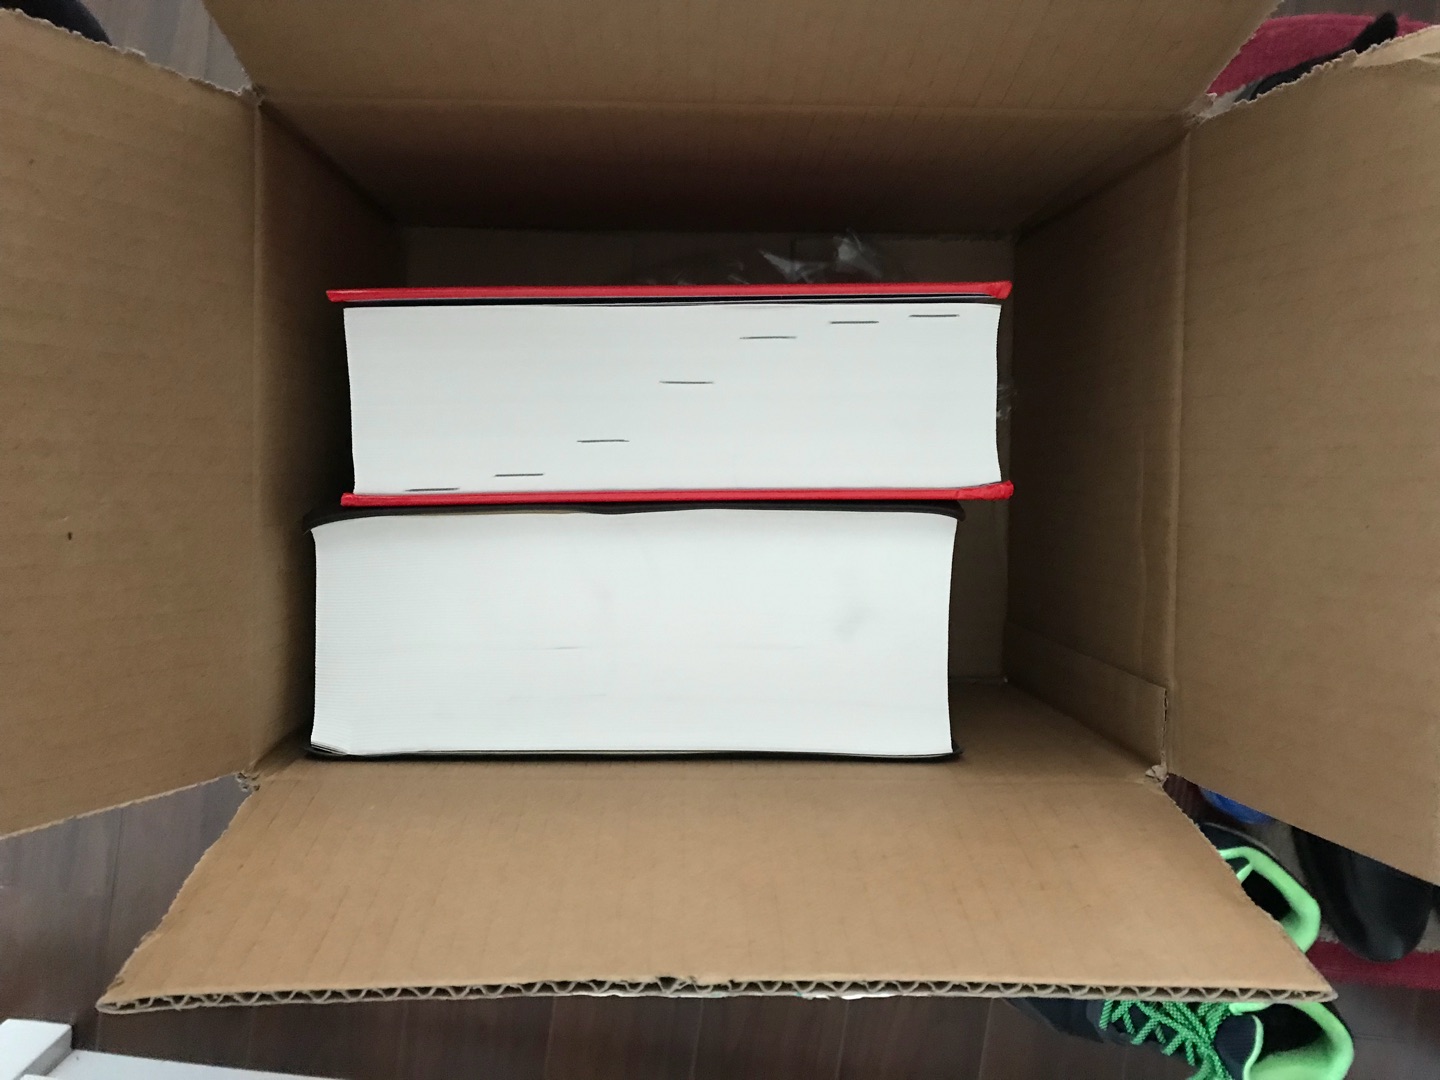 书是好，可是这包装，真是无语?。空荡荡的箱子里这么两本书，书都弄坏了，这项差评！